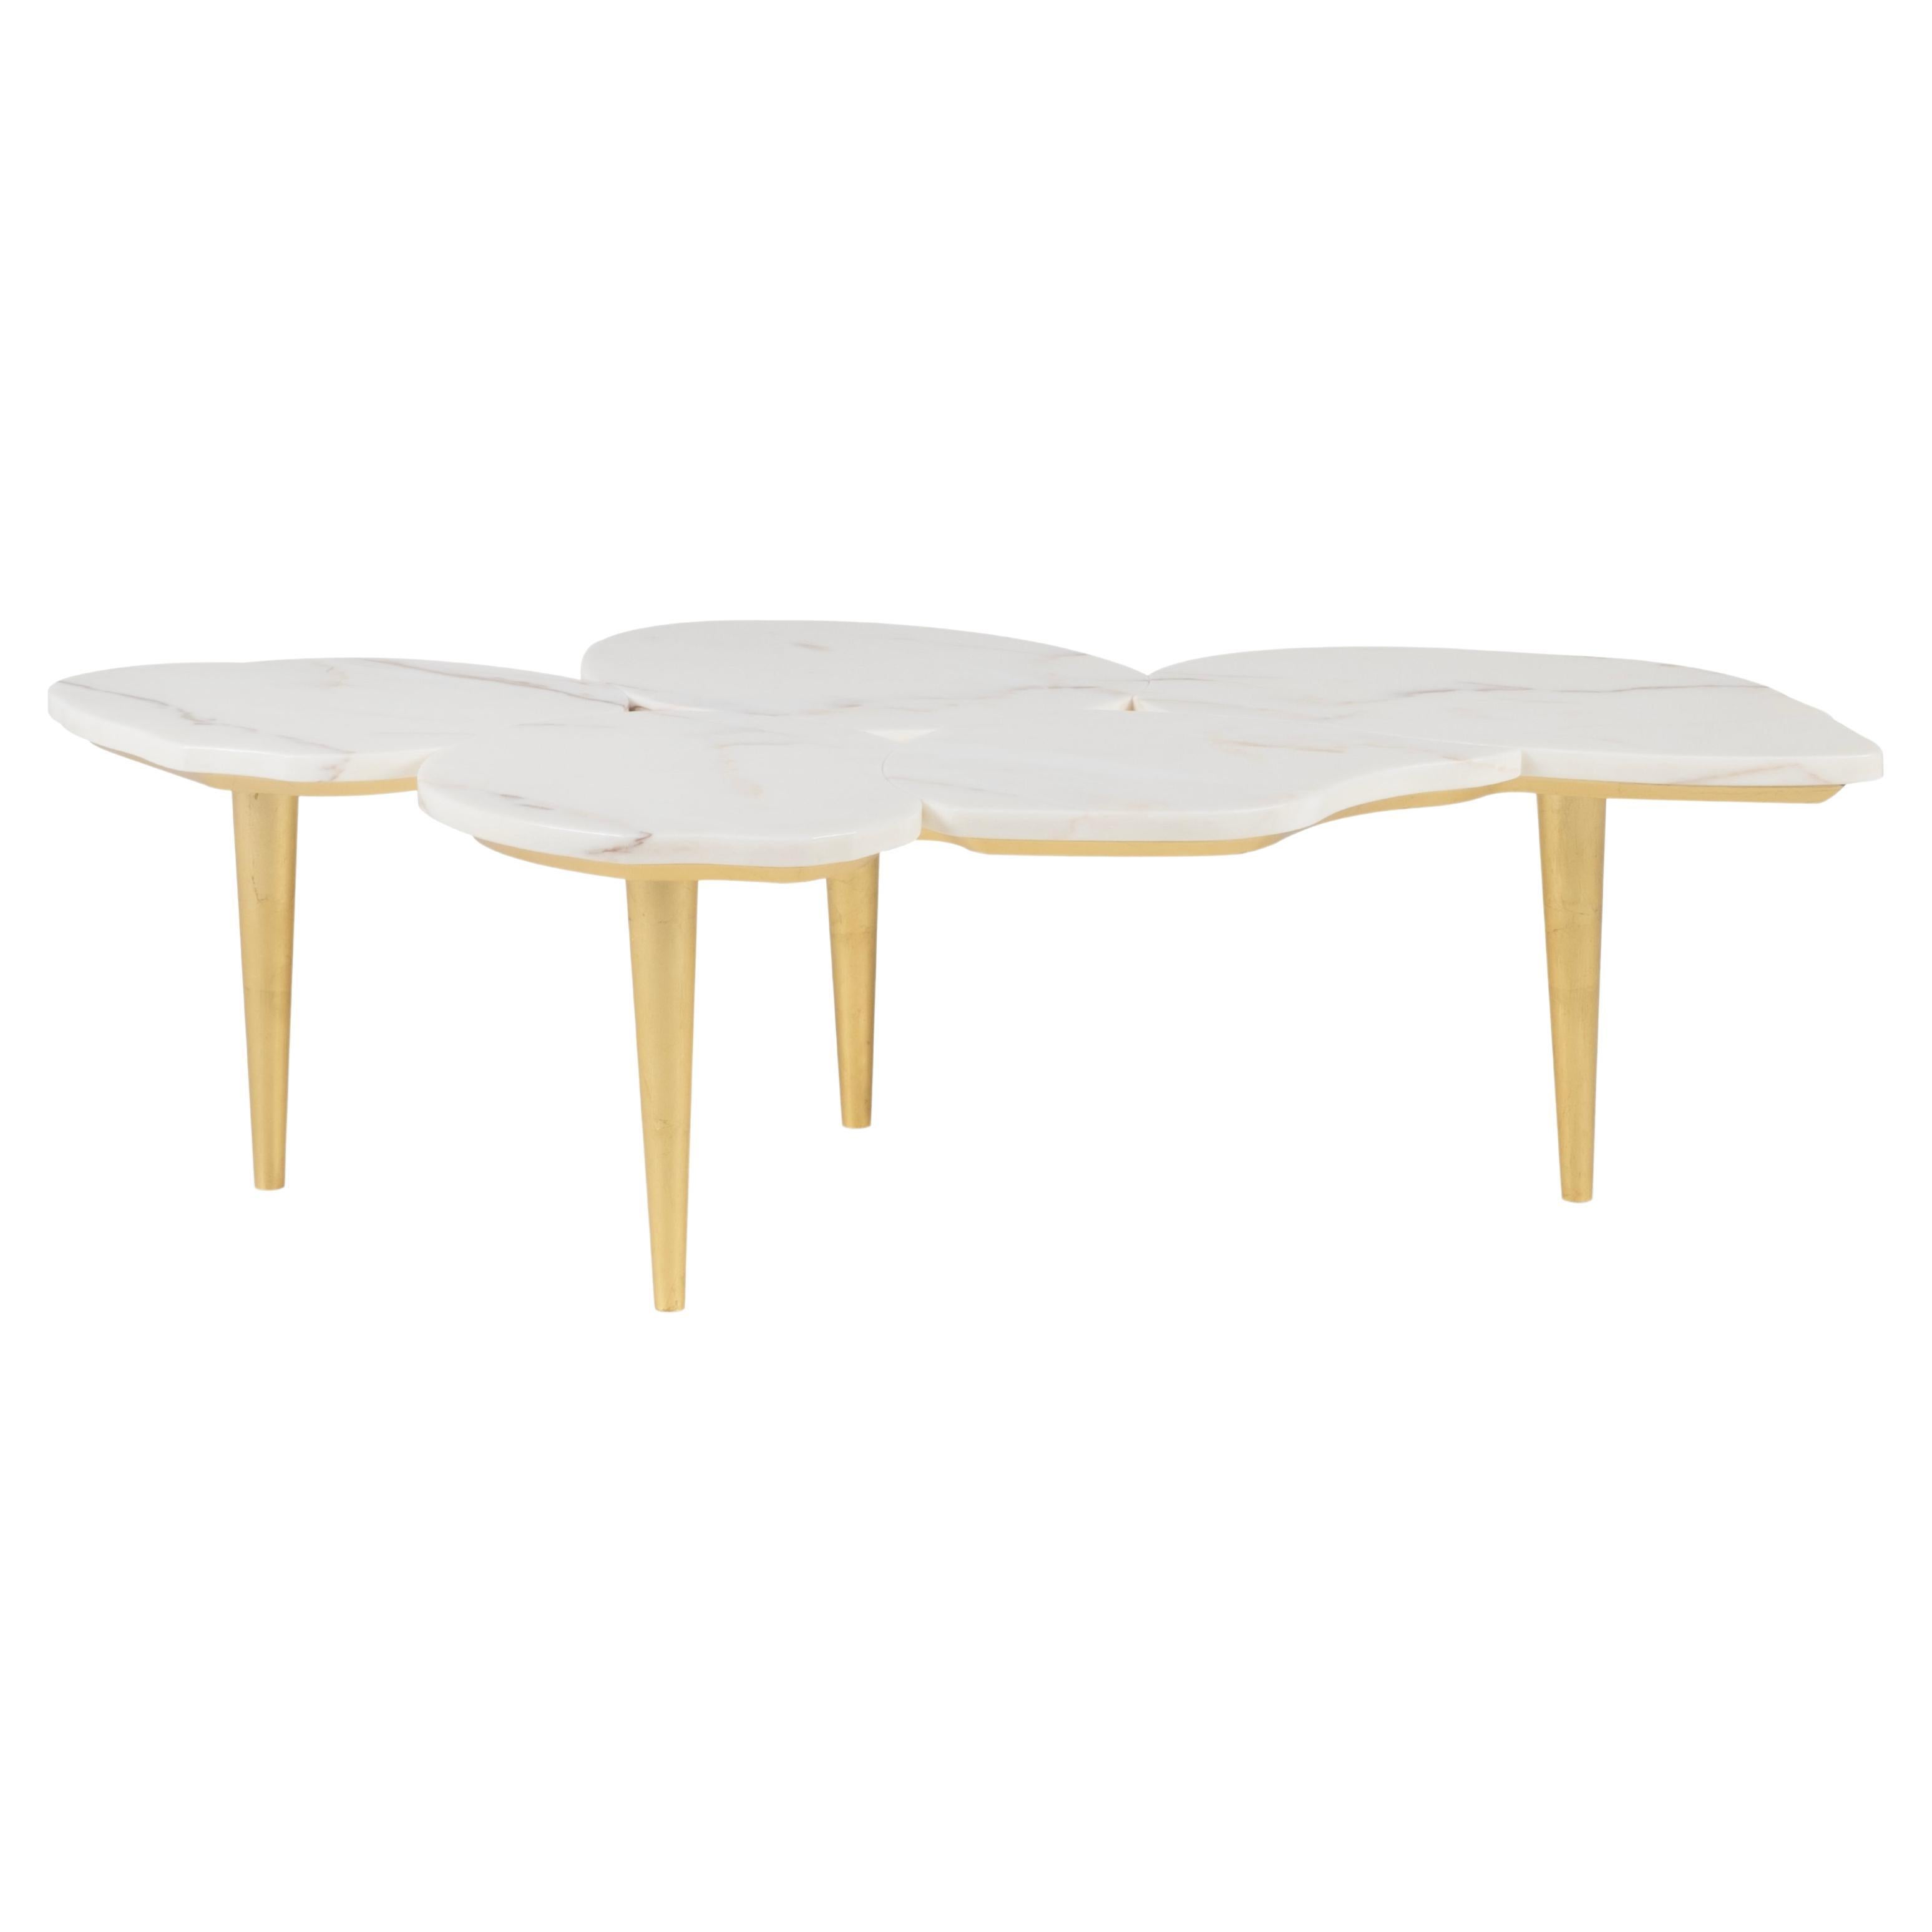 Table basse moderne Infinity, feuille d'or, fabriquée à la main au Portugal par Greenapple